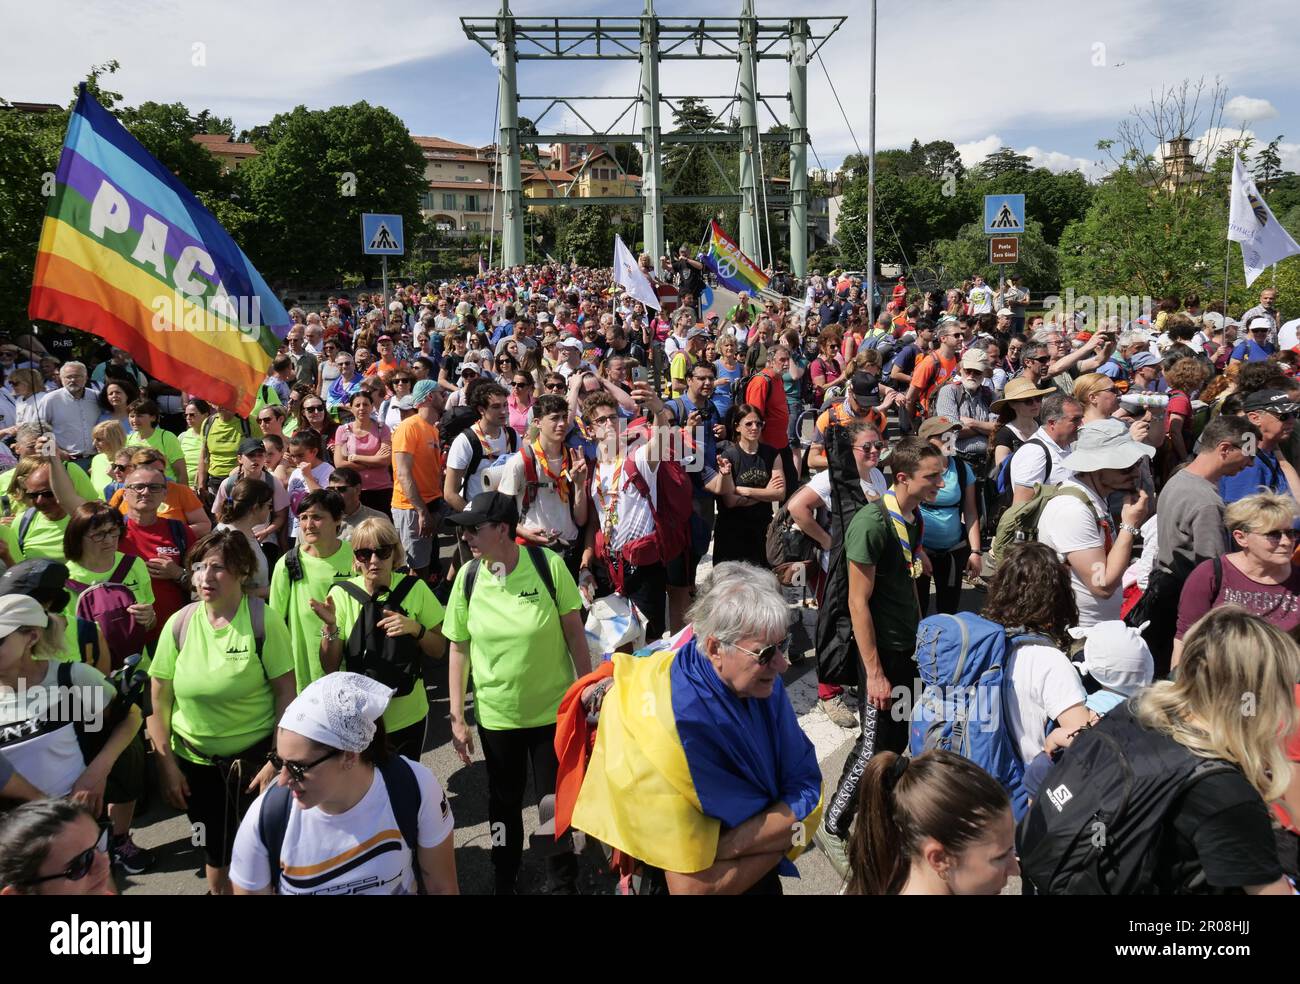 marcia della pace Bergamo Brescia 2023, oltre 10 manifestanti partirono rispettivamente dalle 2 città e si unirono in un simbolico abbraccio per la pace al confine delle province di Palazzolo sull'Oglio Foto Stock